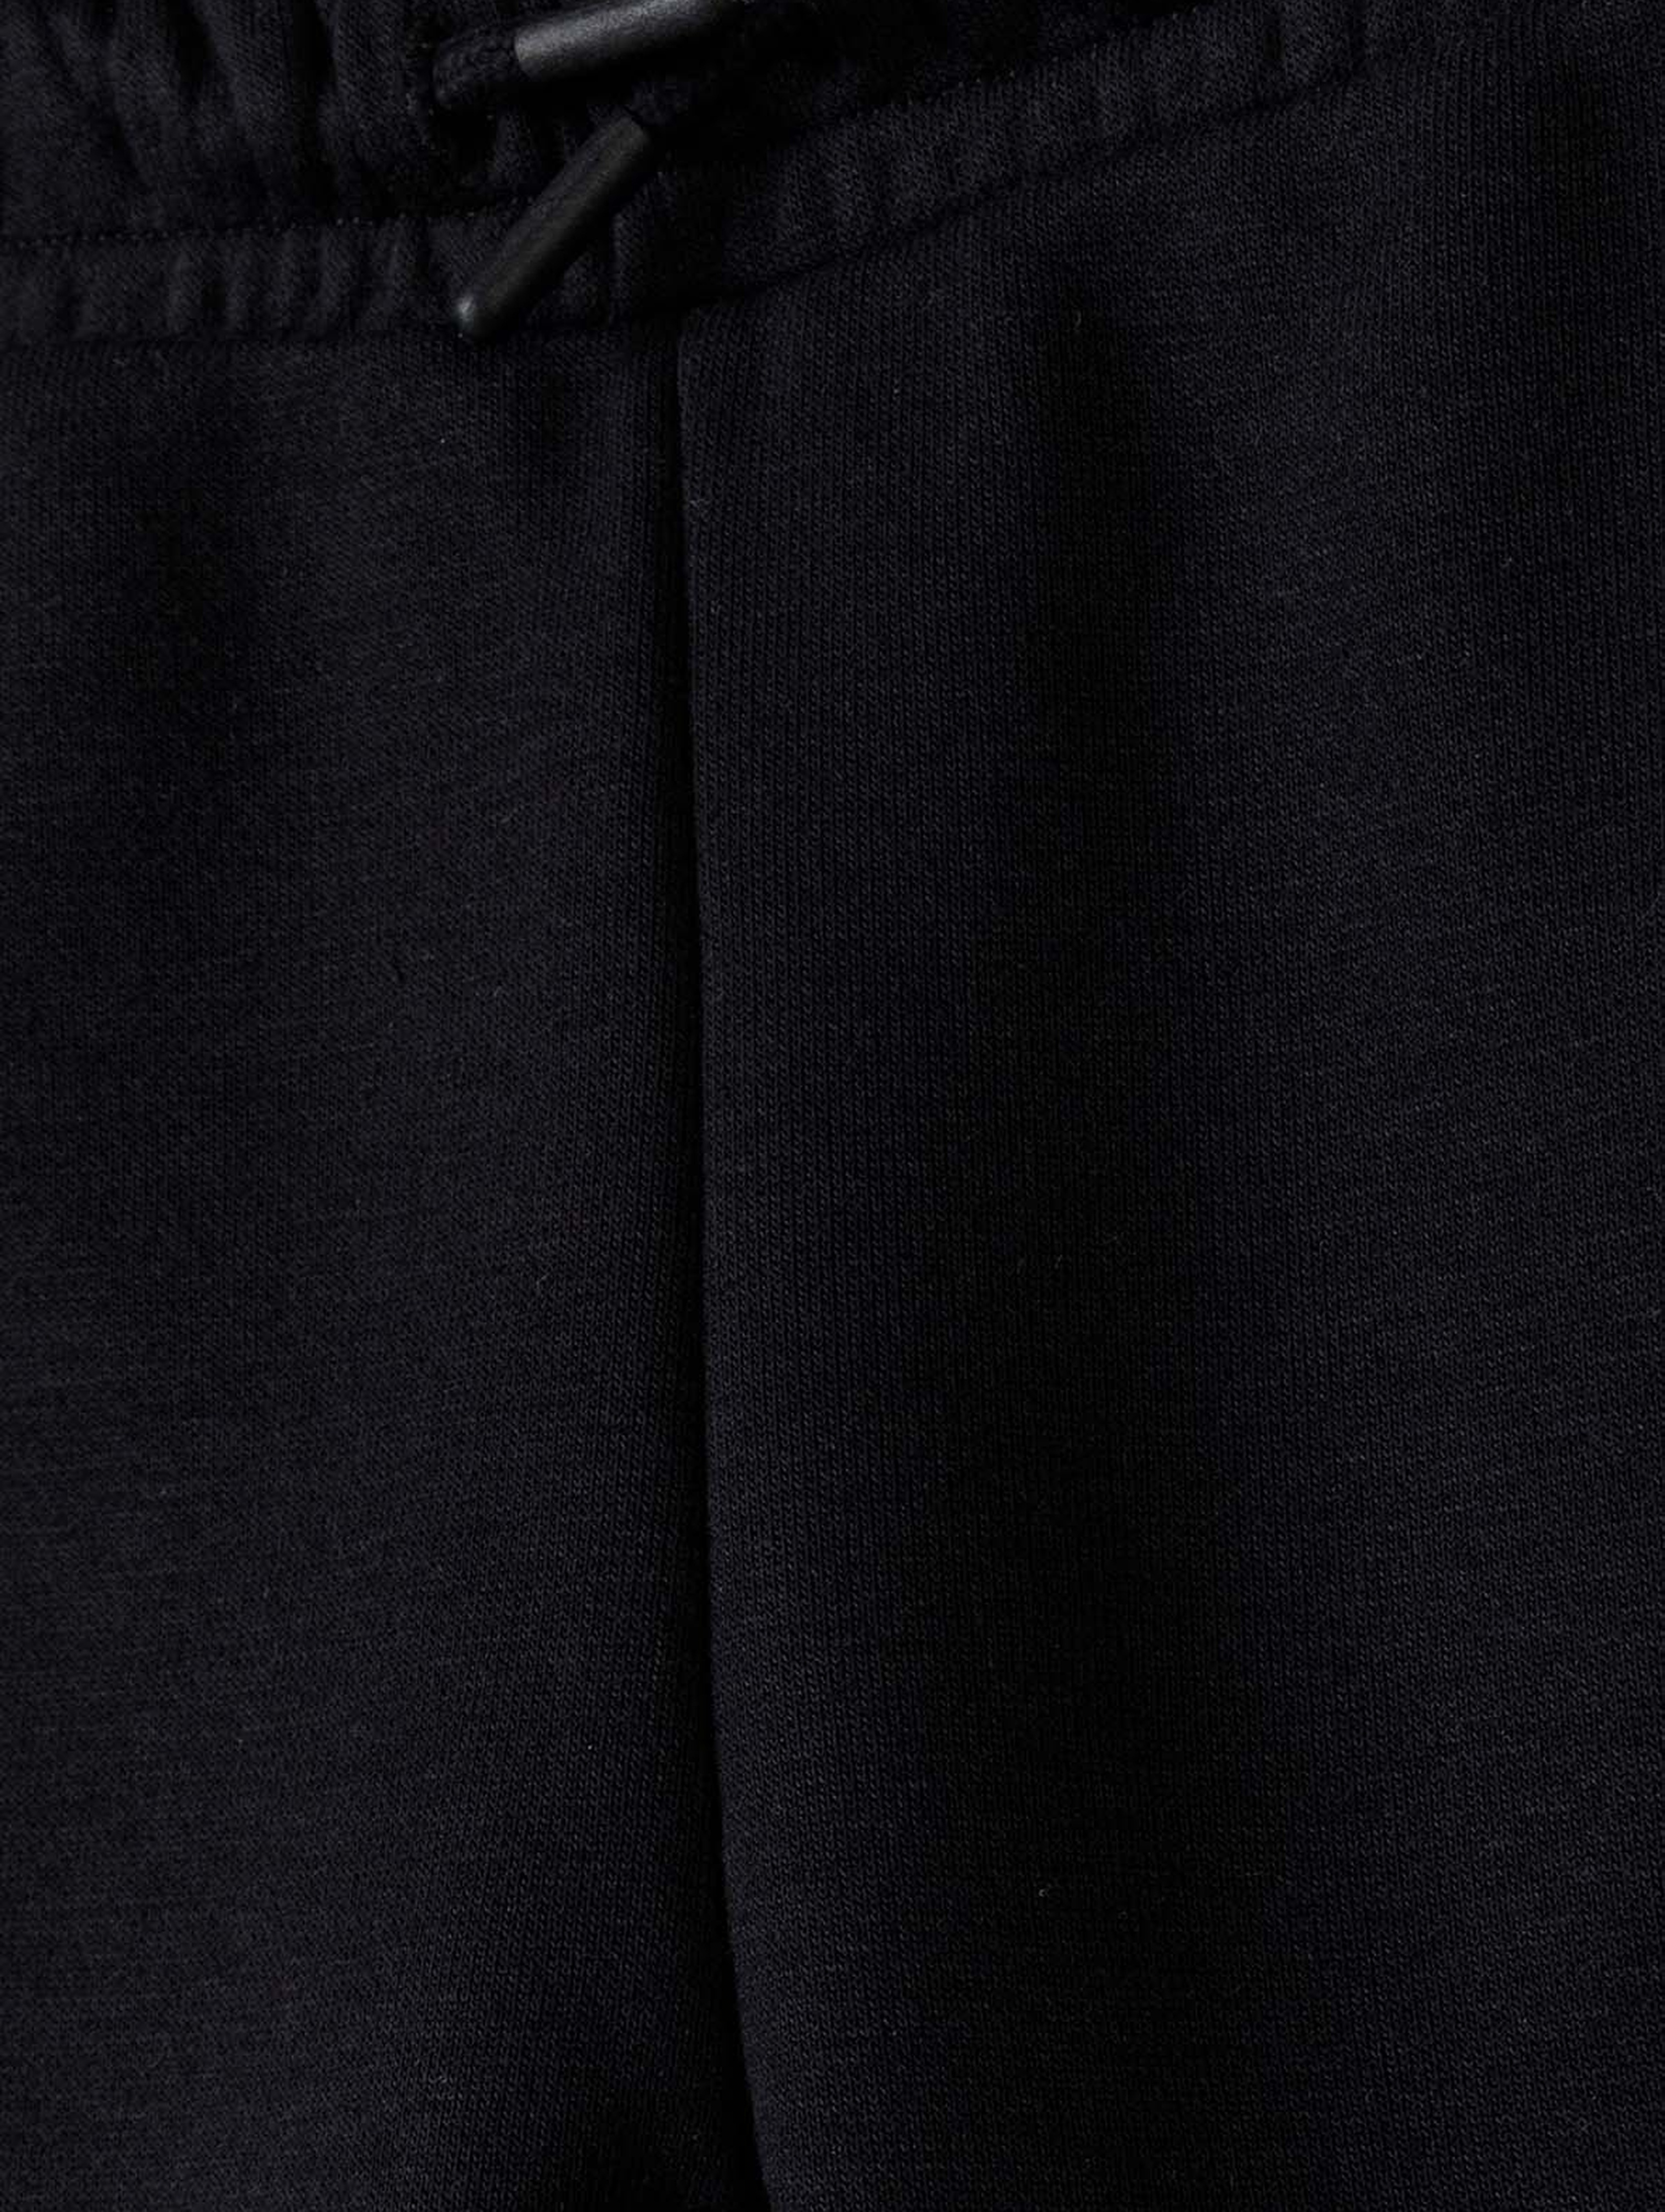 Chłopięce spodnie dresowe 2-pack czarny i khaki